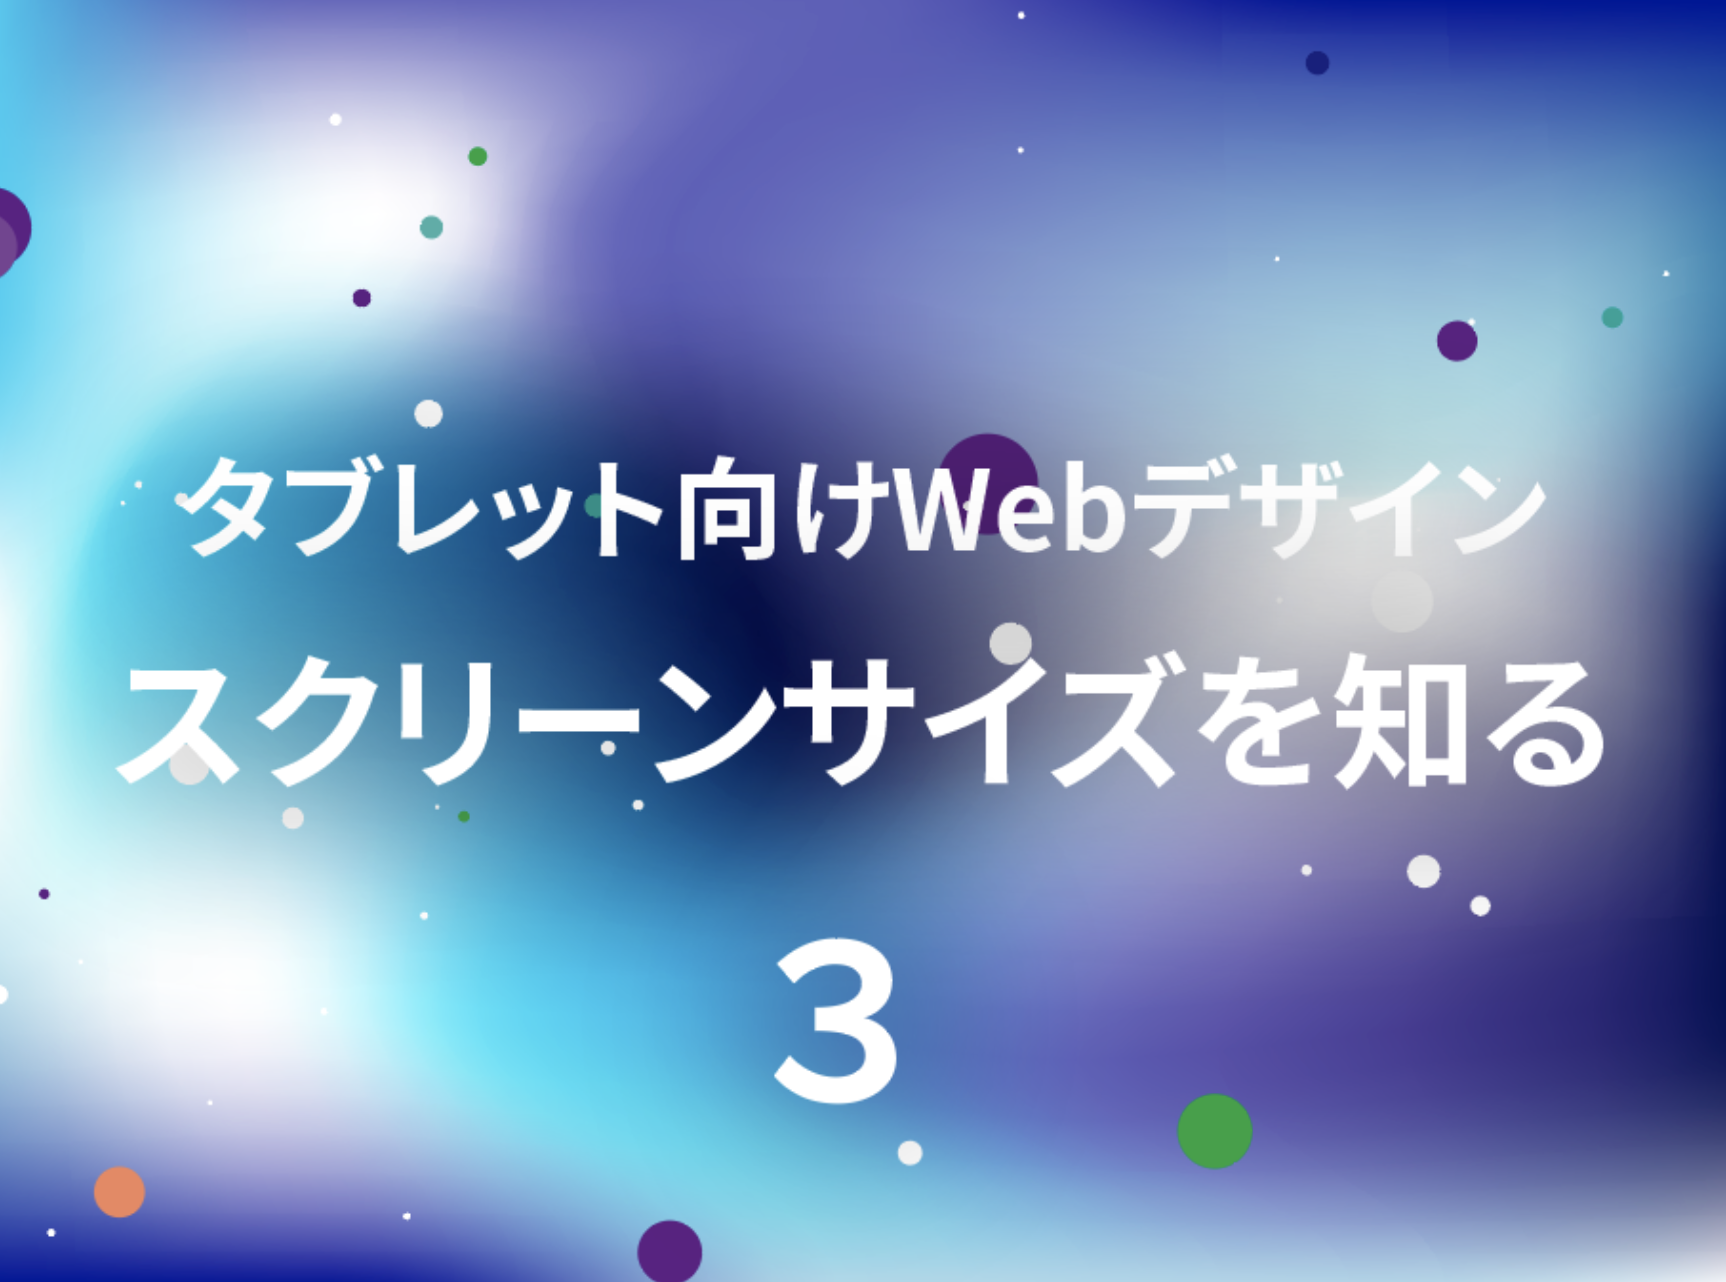 【連載】タブレット向けWebデザインのノウハウ40選(3)